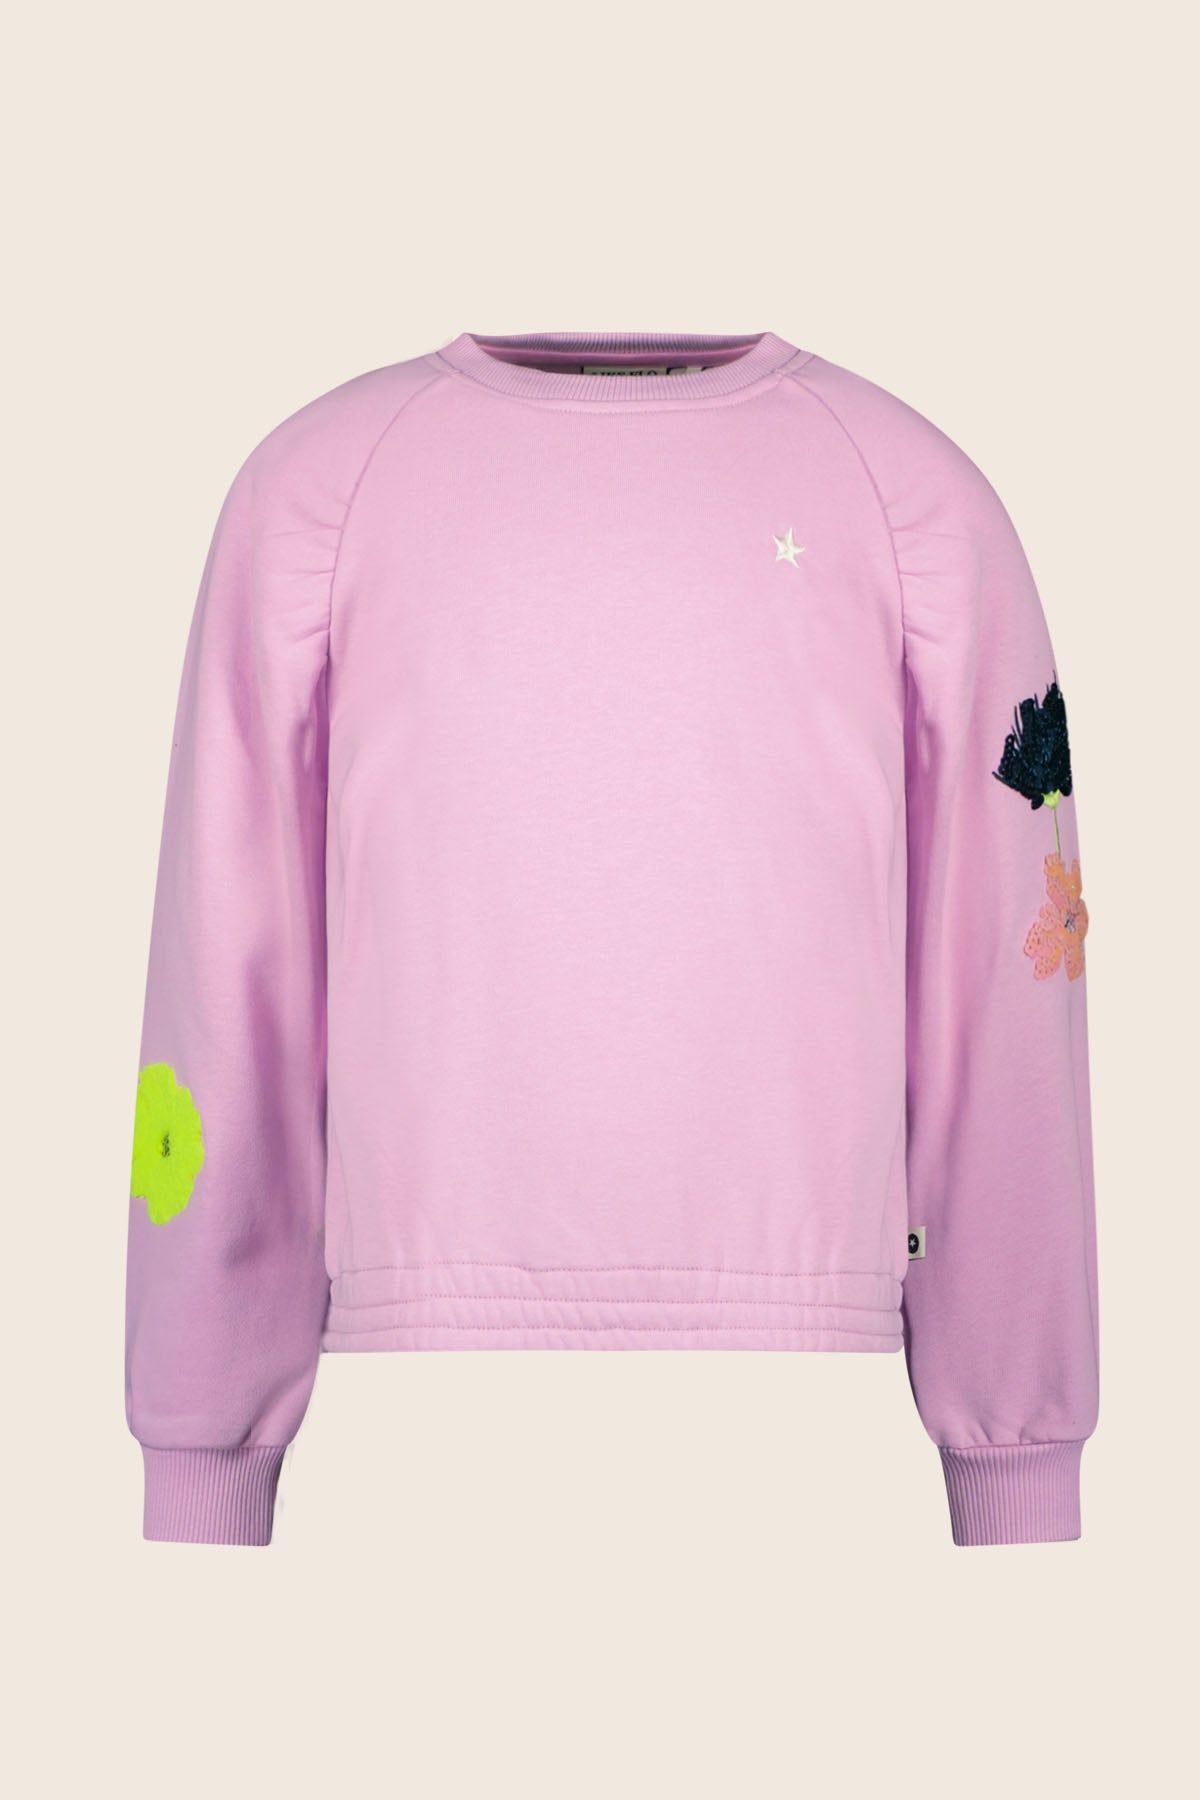 Trui / Sweater Sweater ZOE lilac